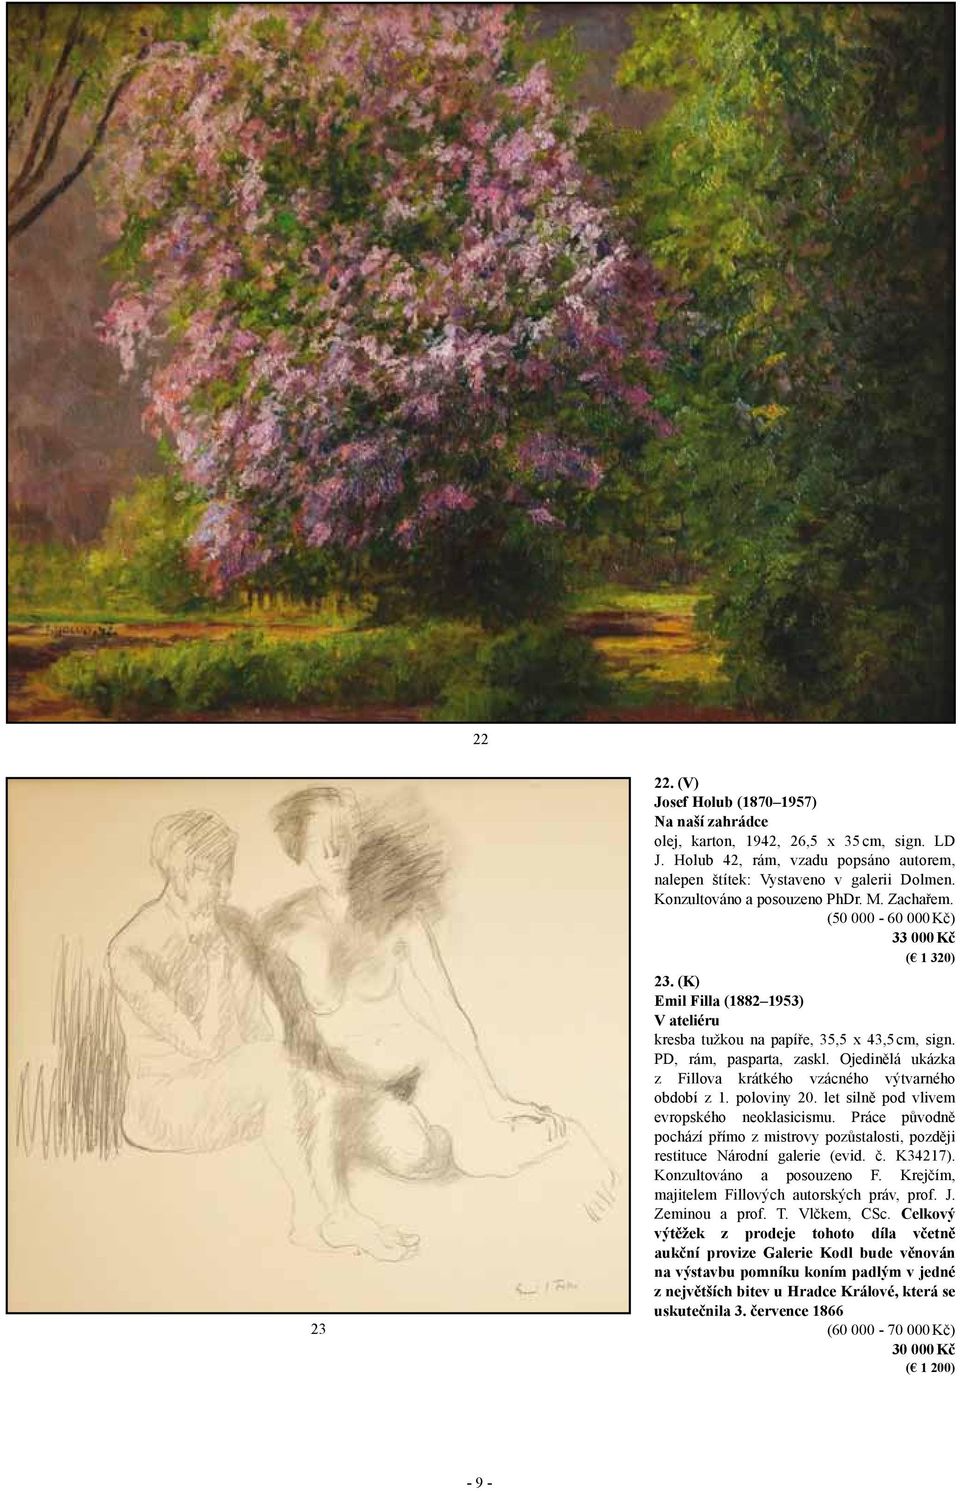 Ojedinělá ukázka z Fillova krátkého vzácného výtvarného období z 1. poloviny 20. let silně pod vlivem evropského neoklasicismu.